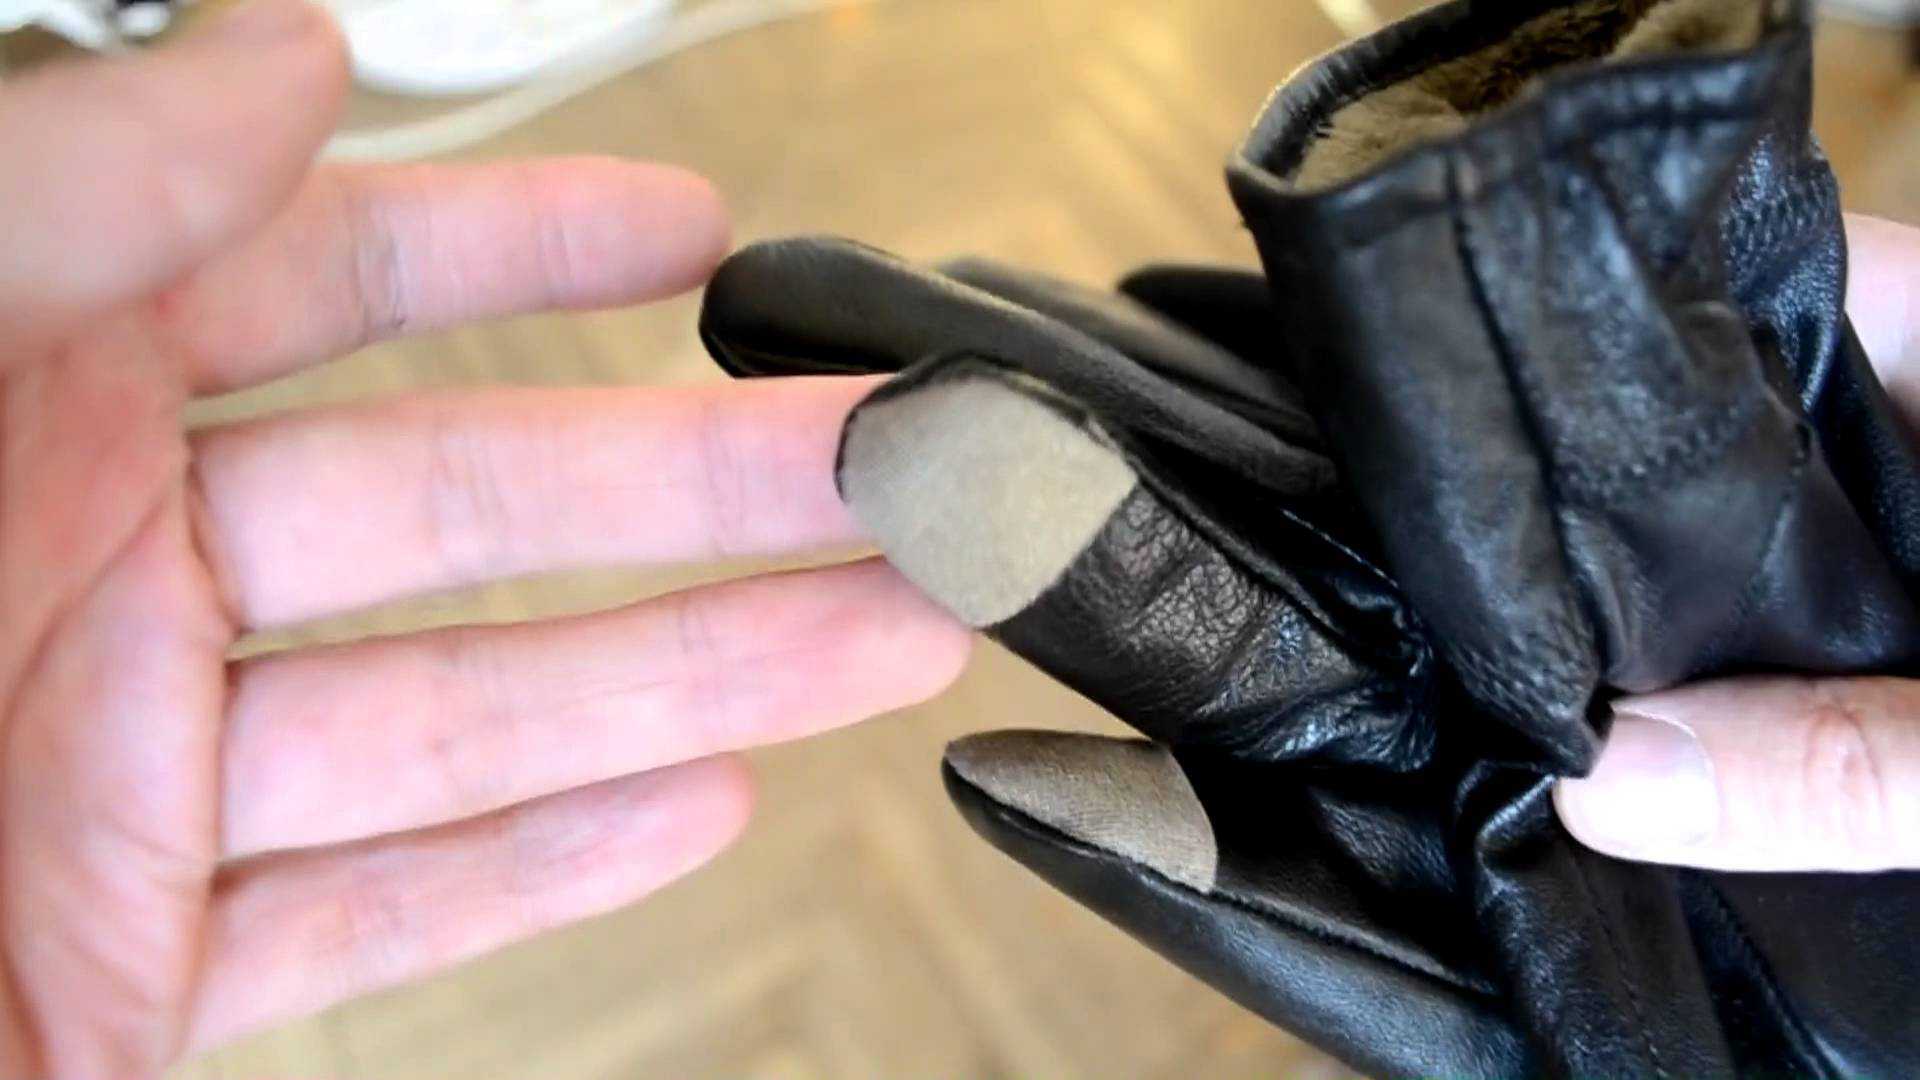 Как вычистить кожаные перчатки от грязи, пятен и засаливания: химчистка и домашние методы